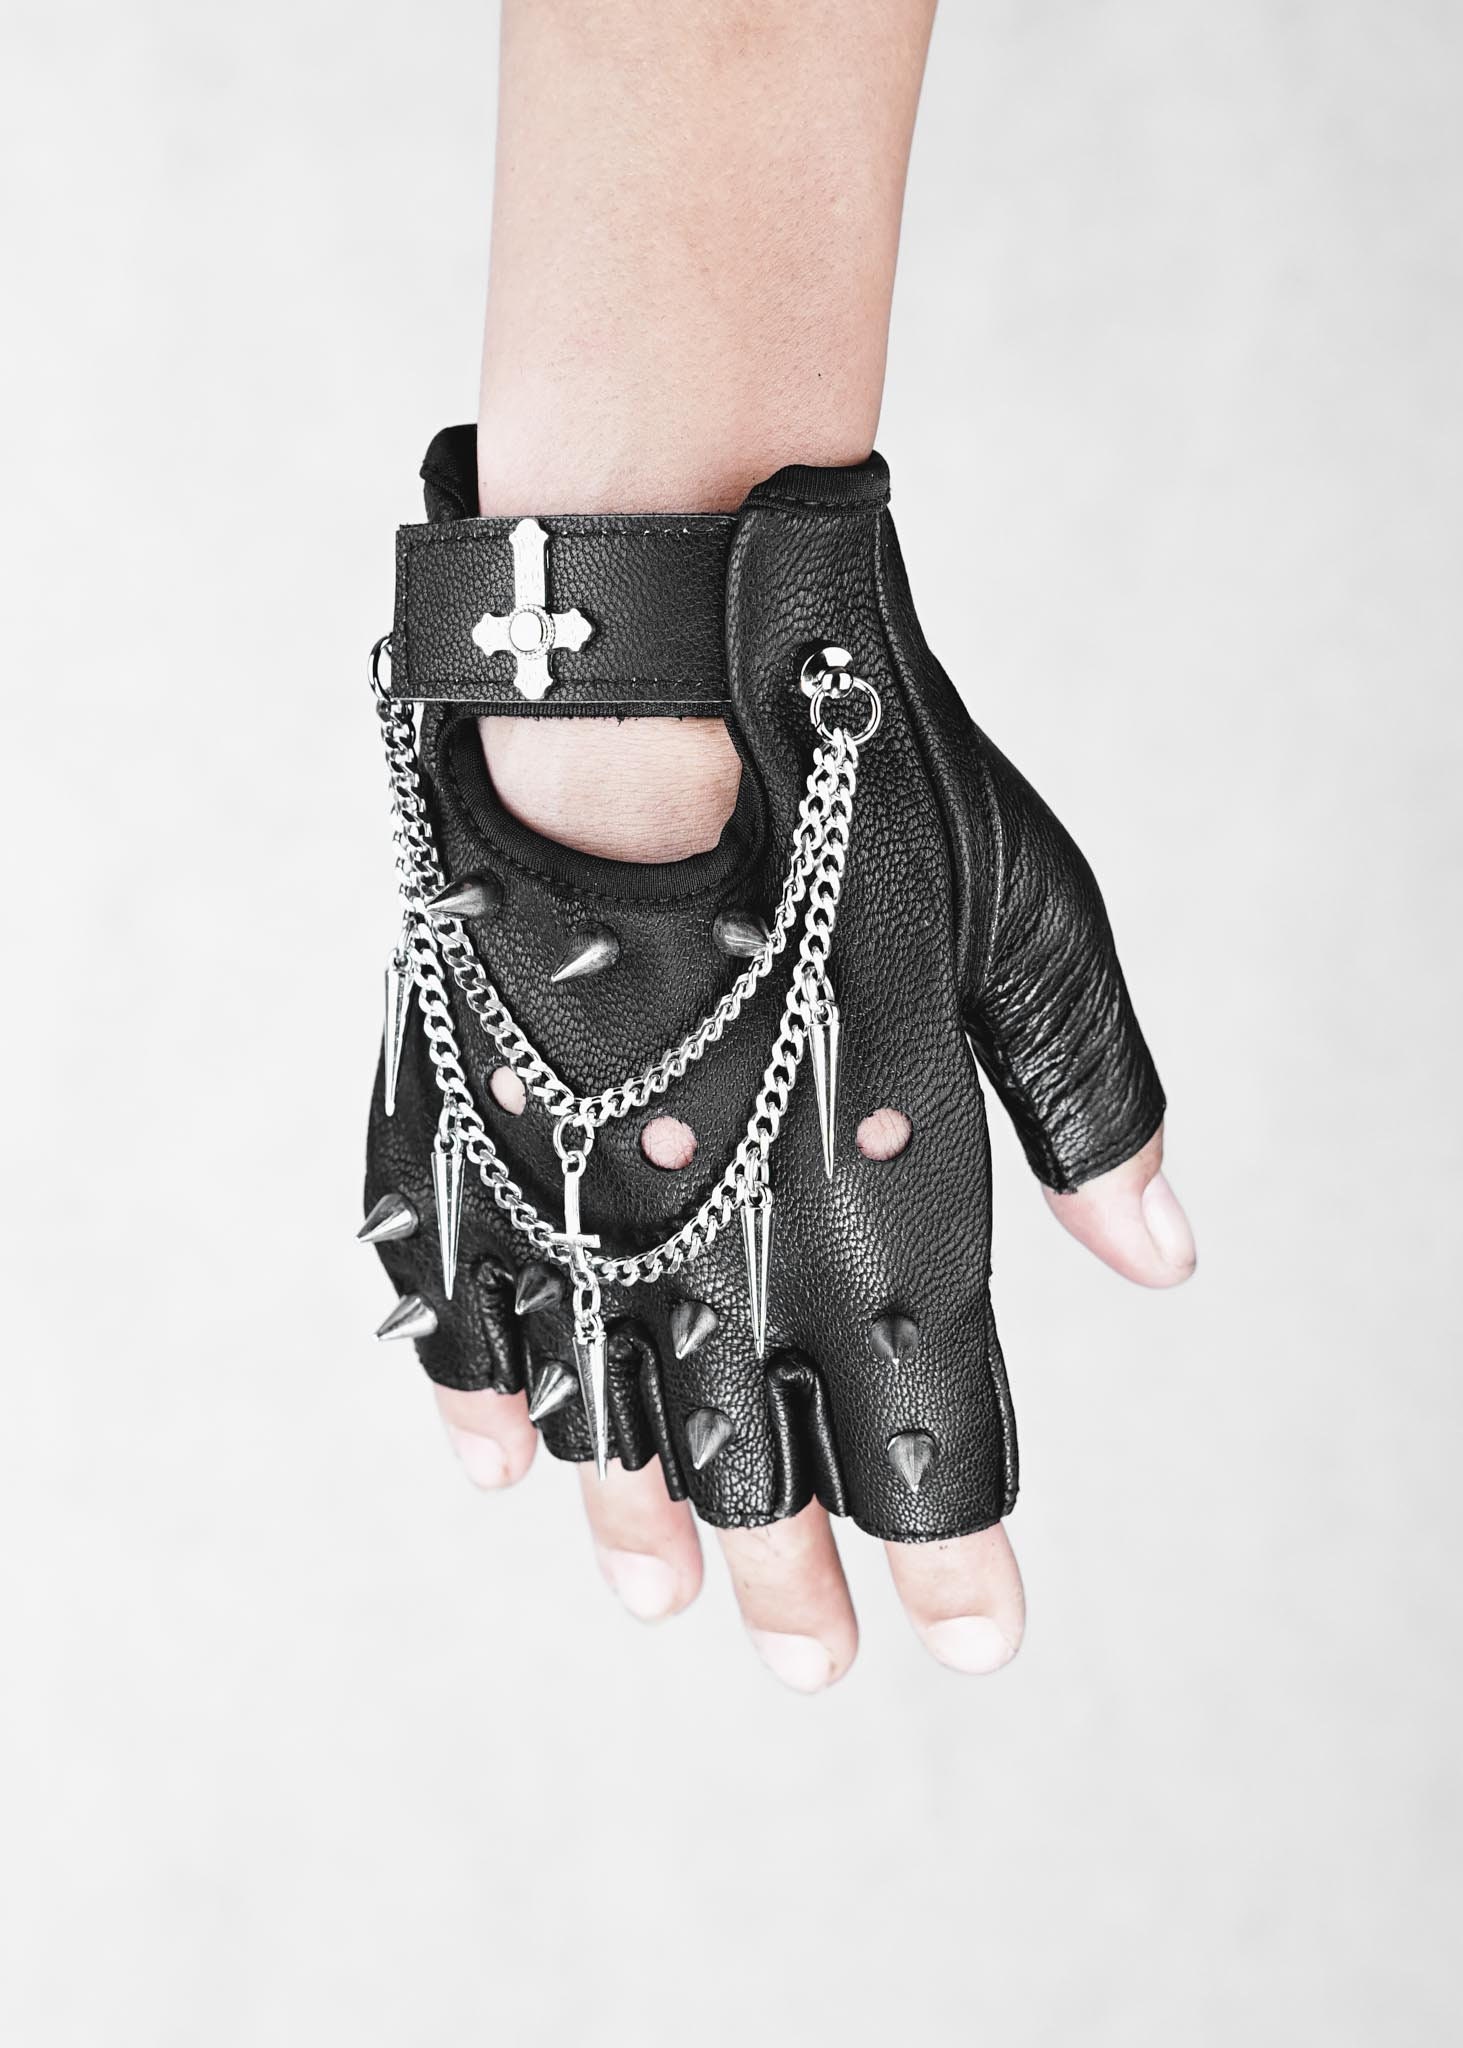 Gothic White Skull On Black Fingerless Gloves  With Metal Rings 